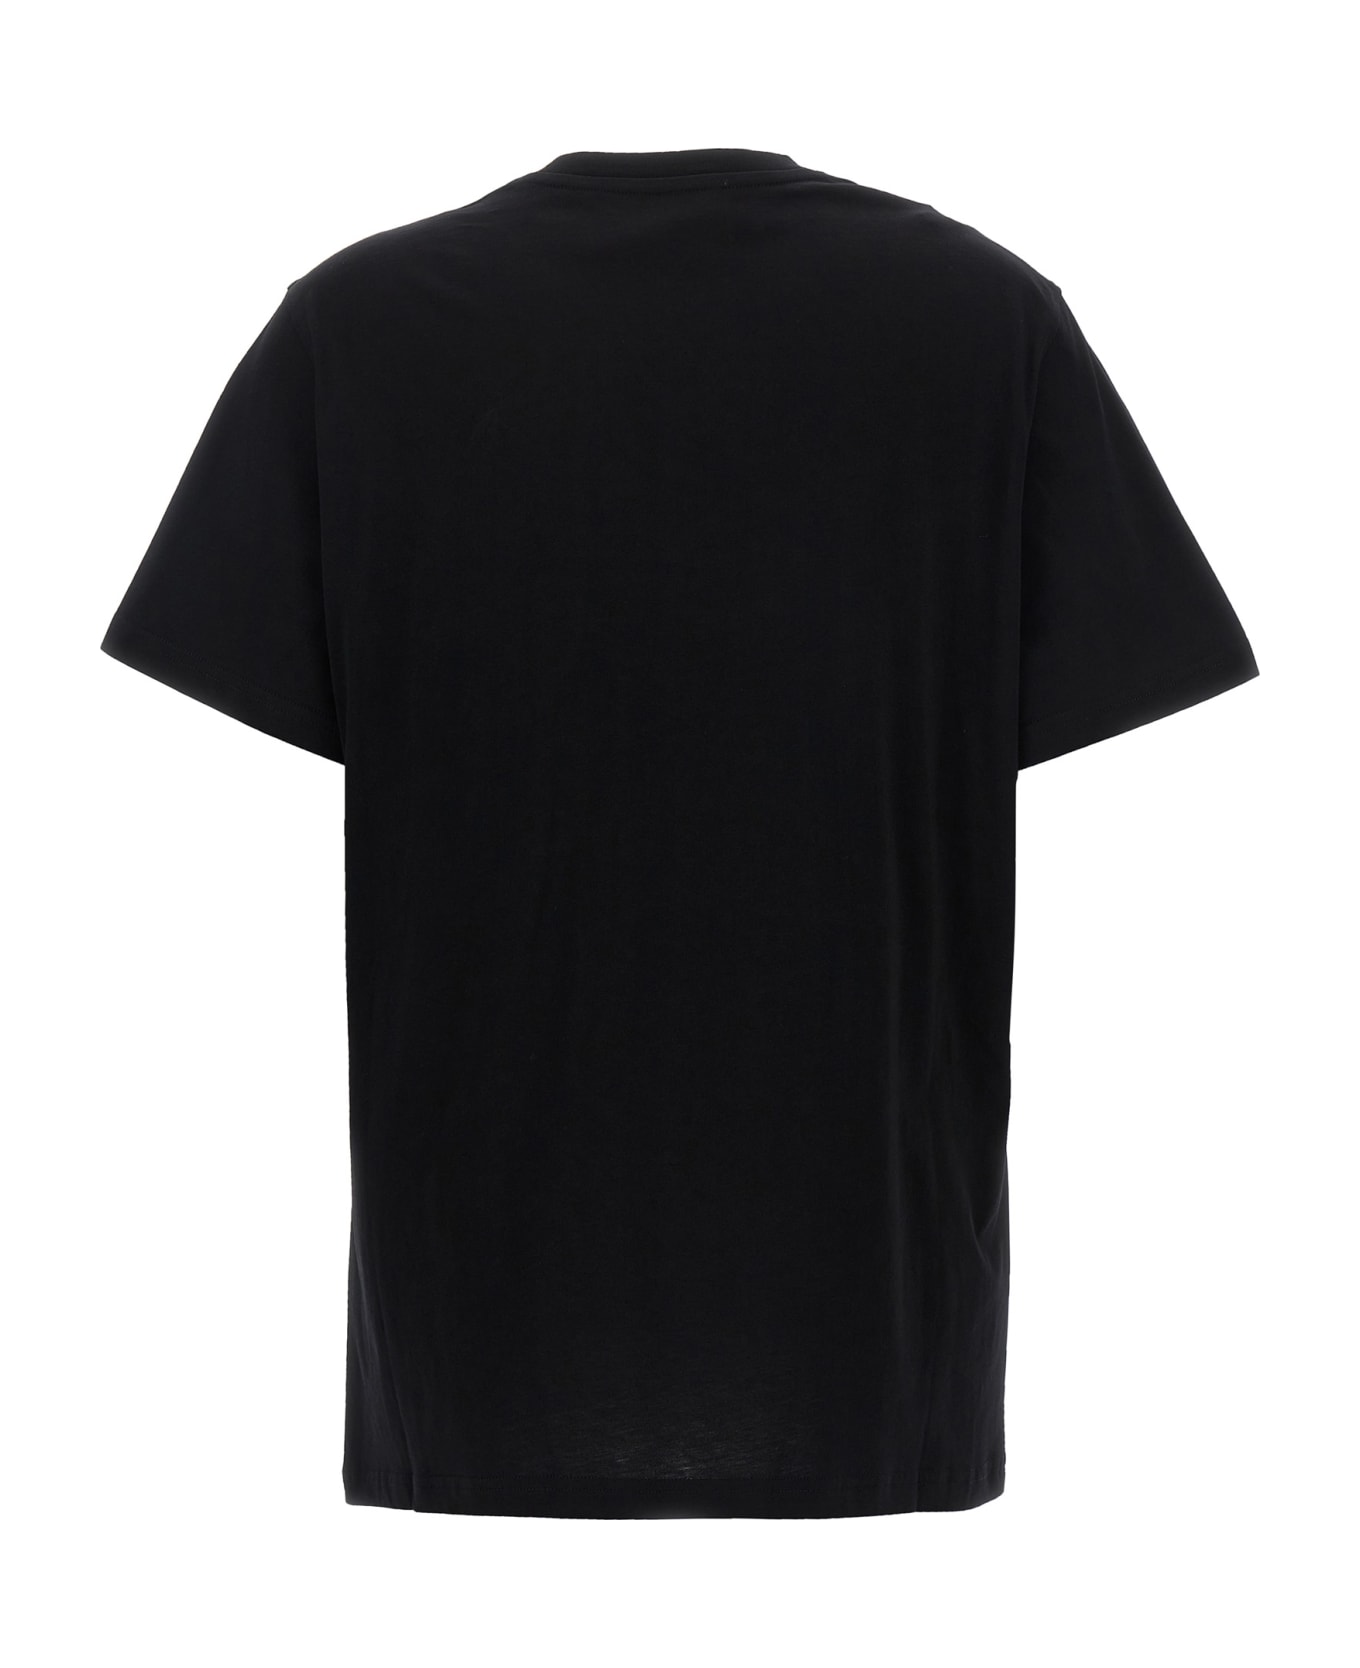 Moschino 'in Love We Trust' T-shirt - Black  